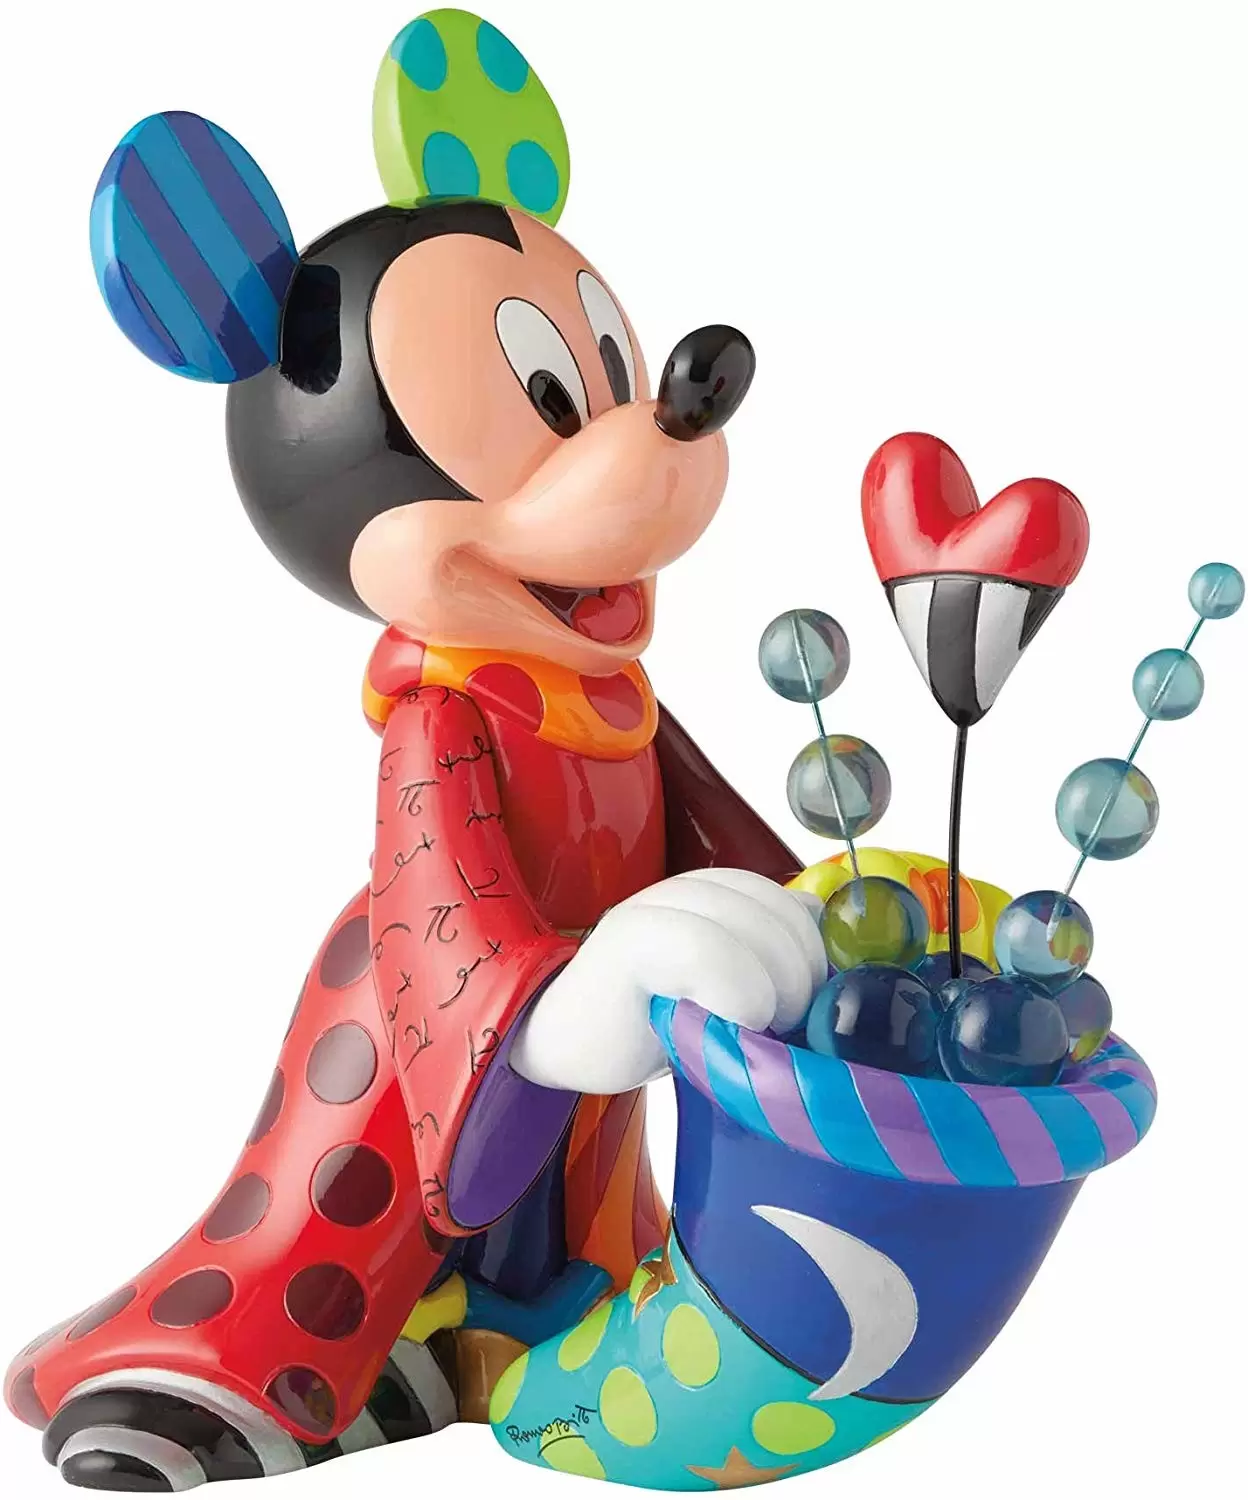 Britto - Disney by Romero Britto - Sorcerer Mickey